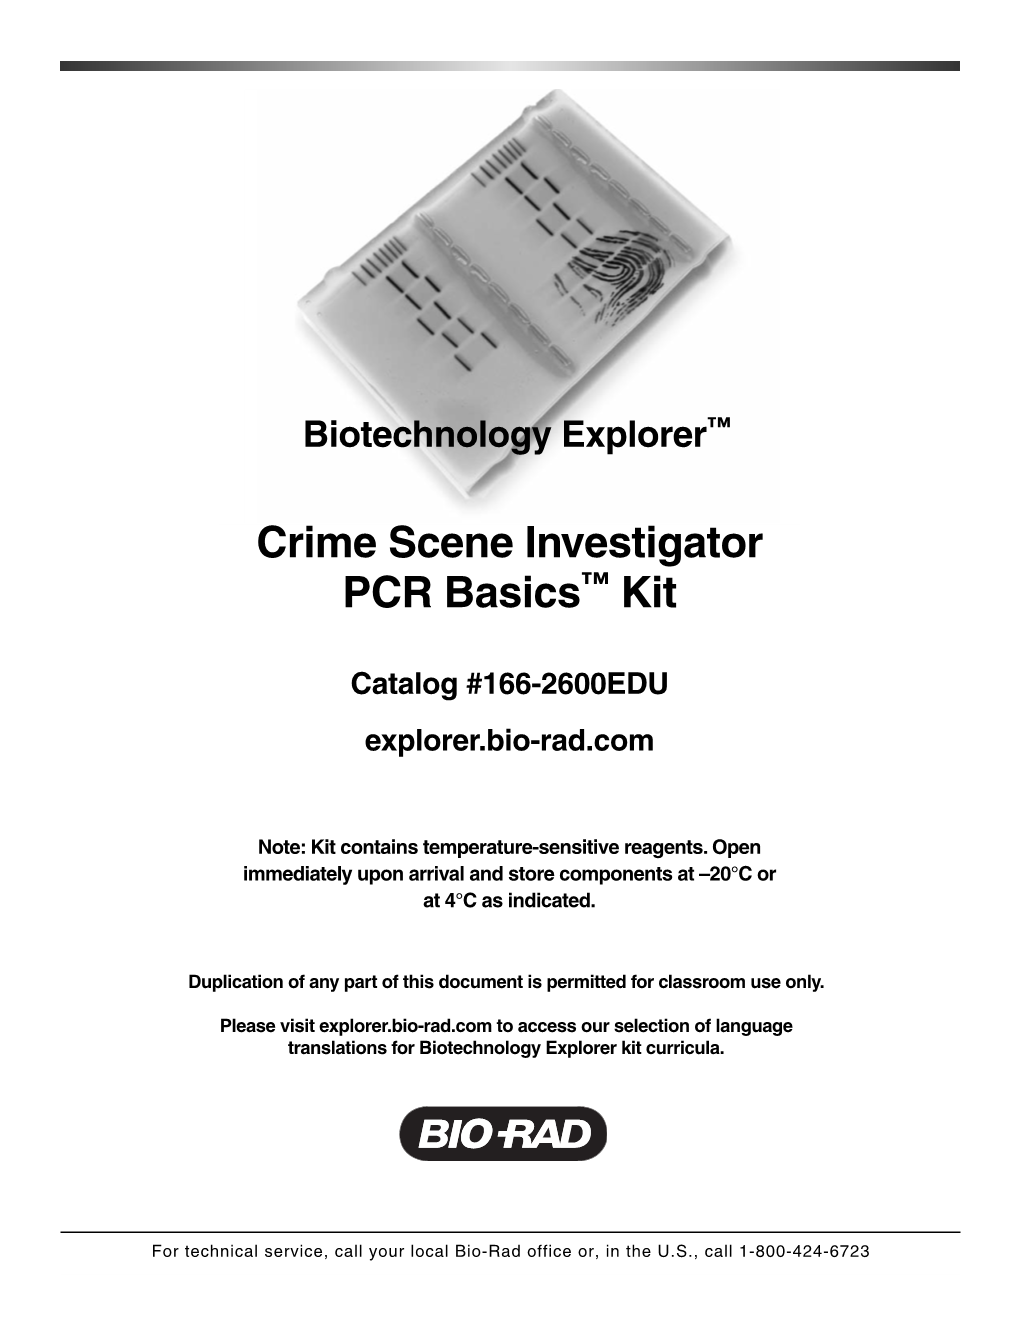 Crime Scene Investigator PCR Basics™ Kit